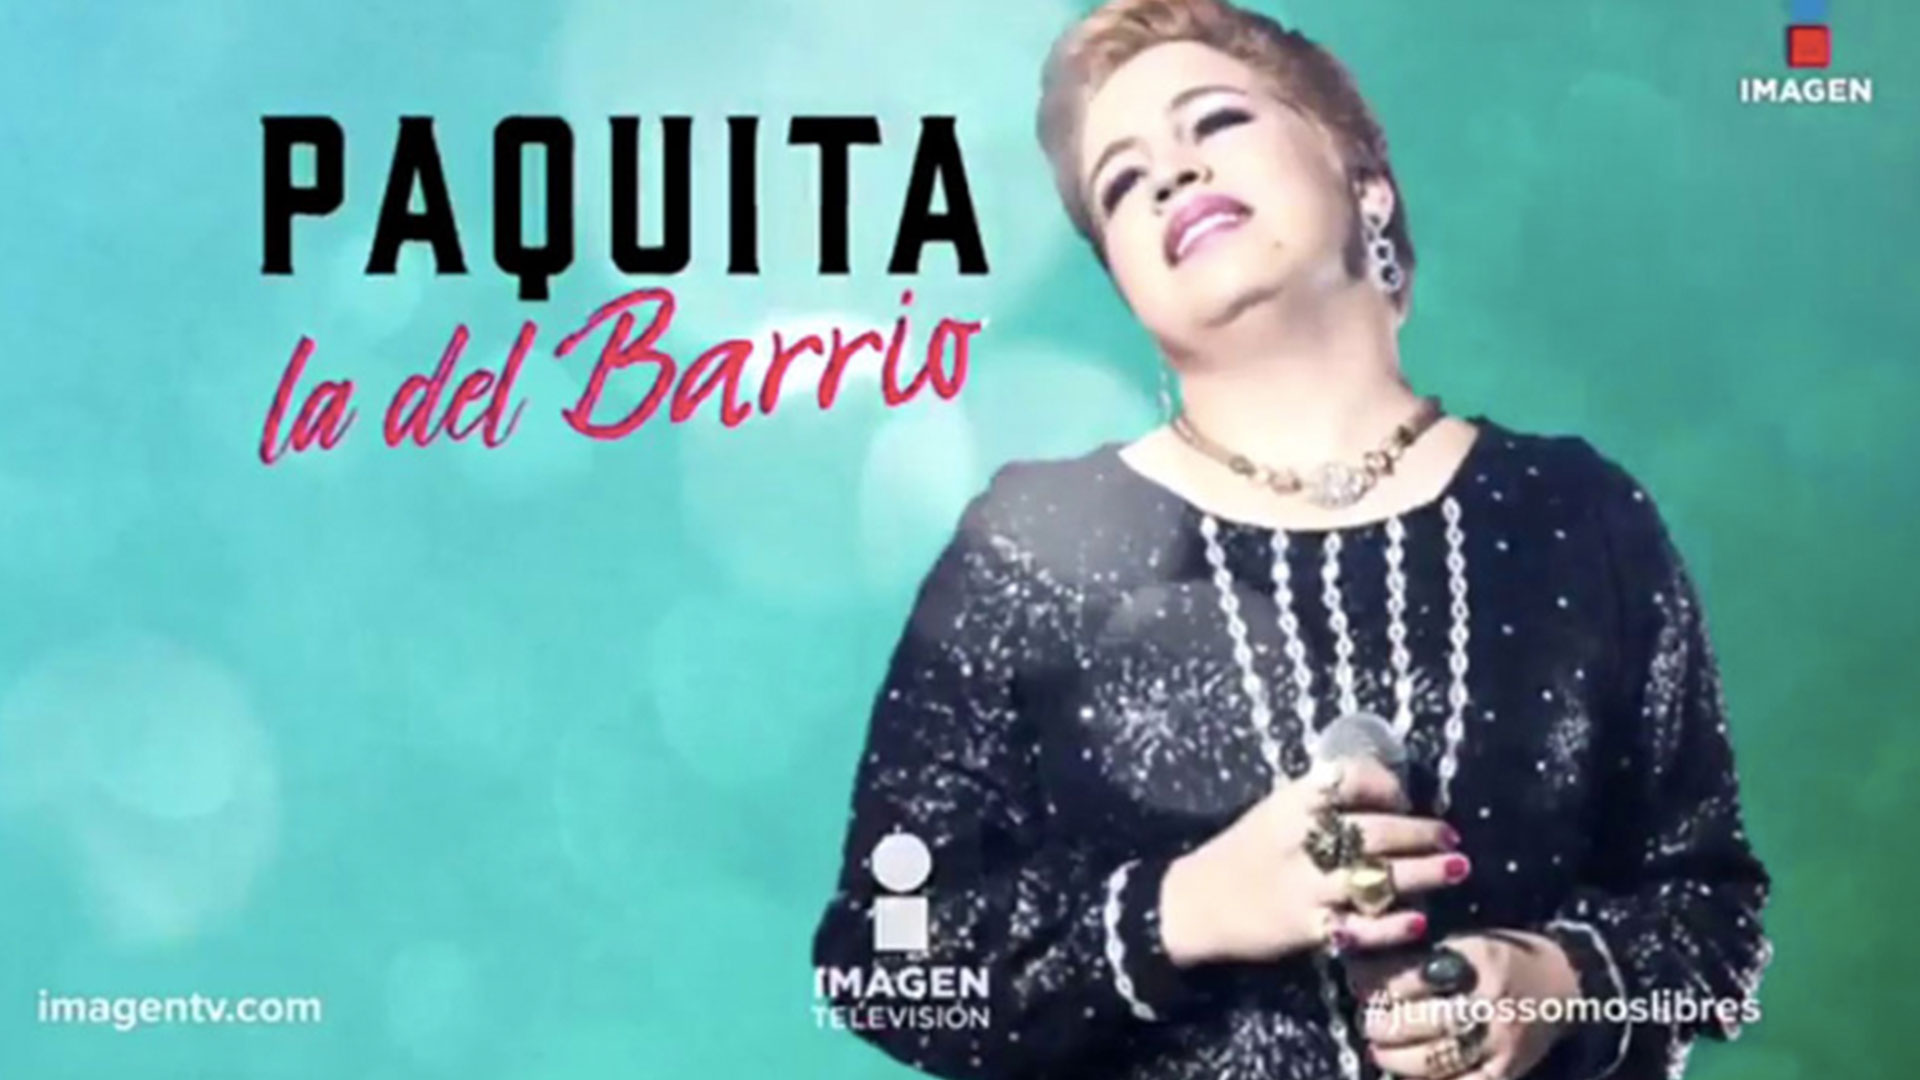 La serie sobre Paquita la del Barrio se transmitió en la cadena mexicana Imagen Televisión